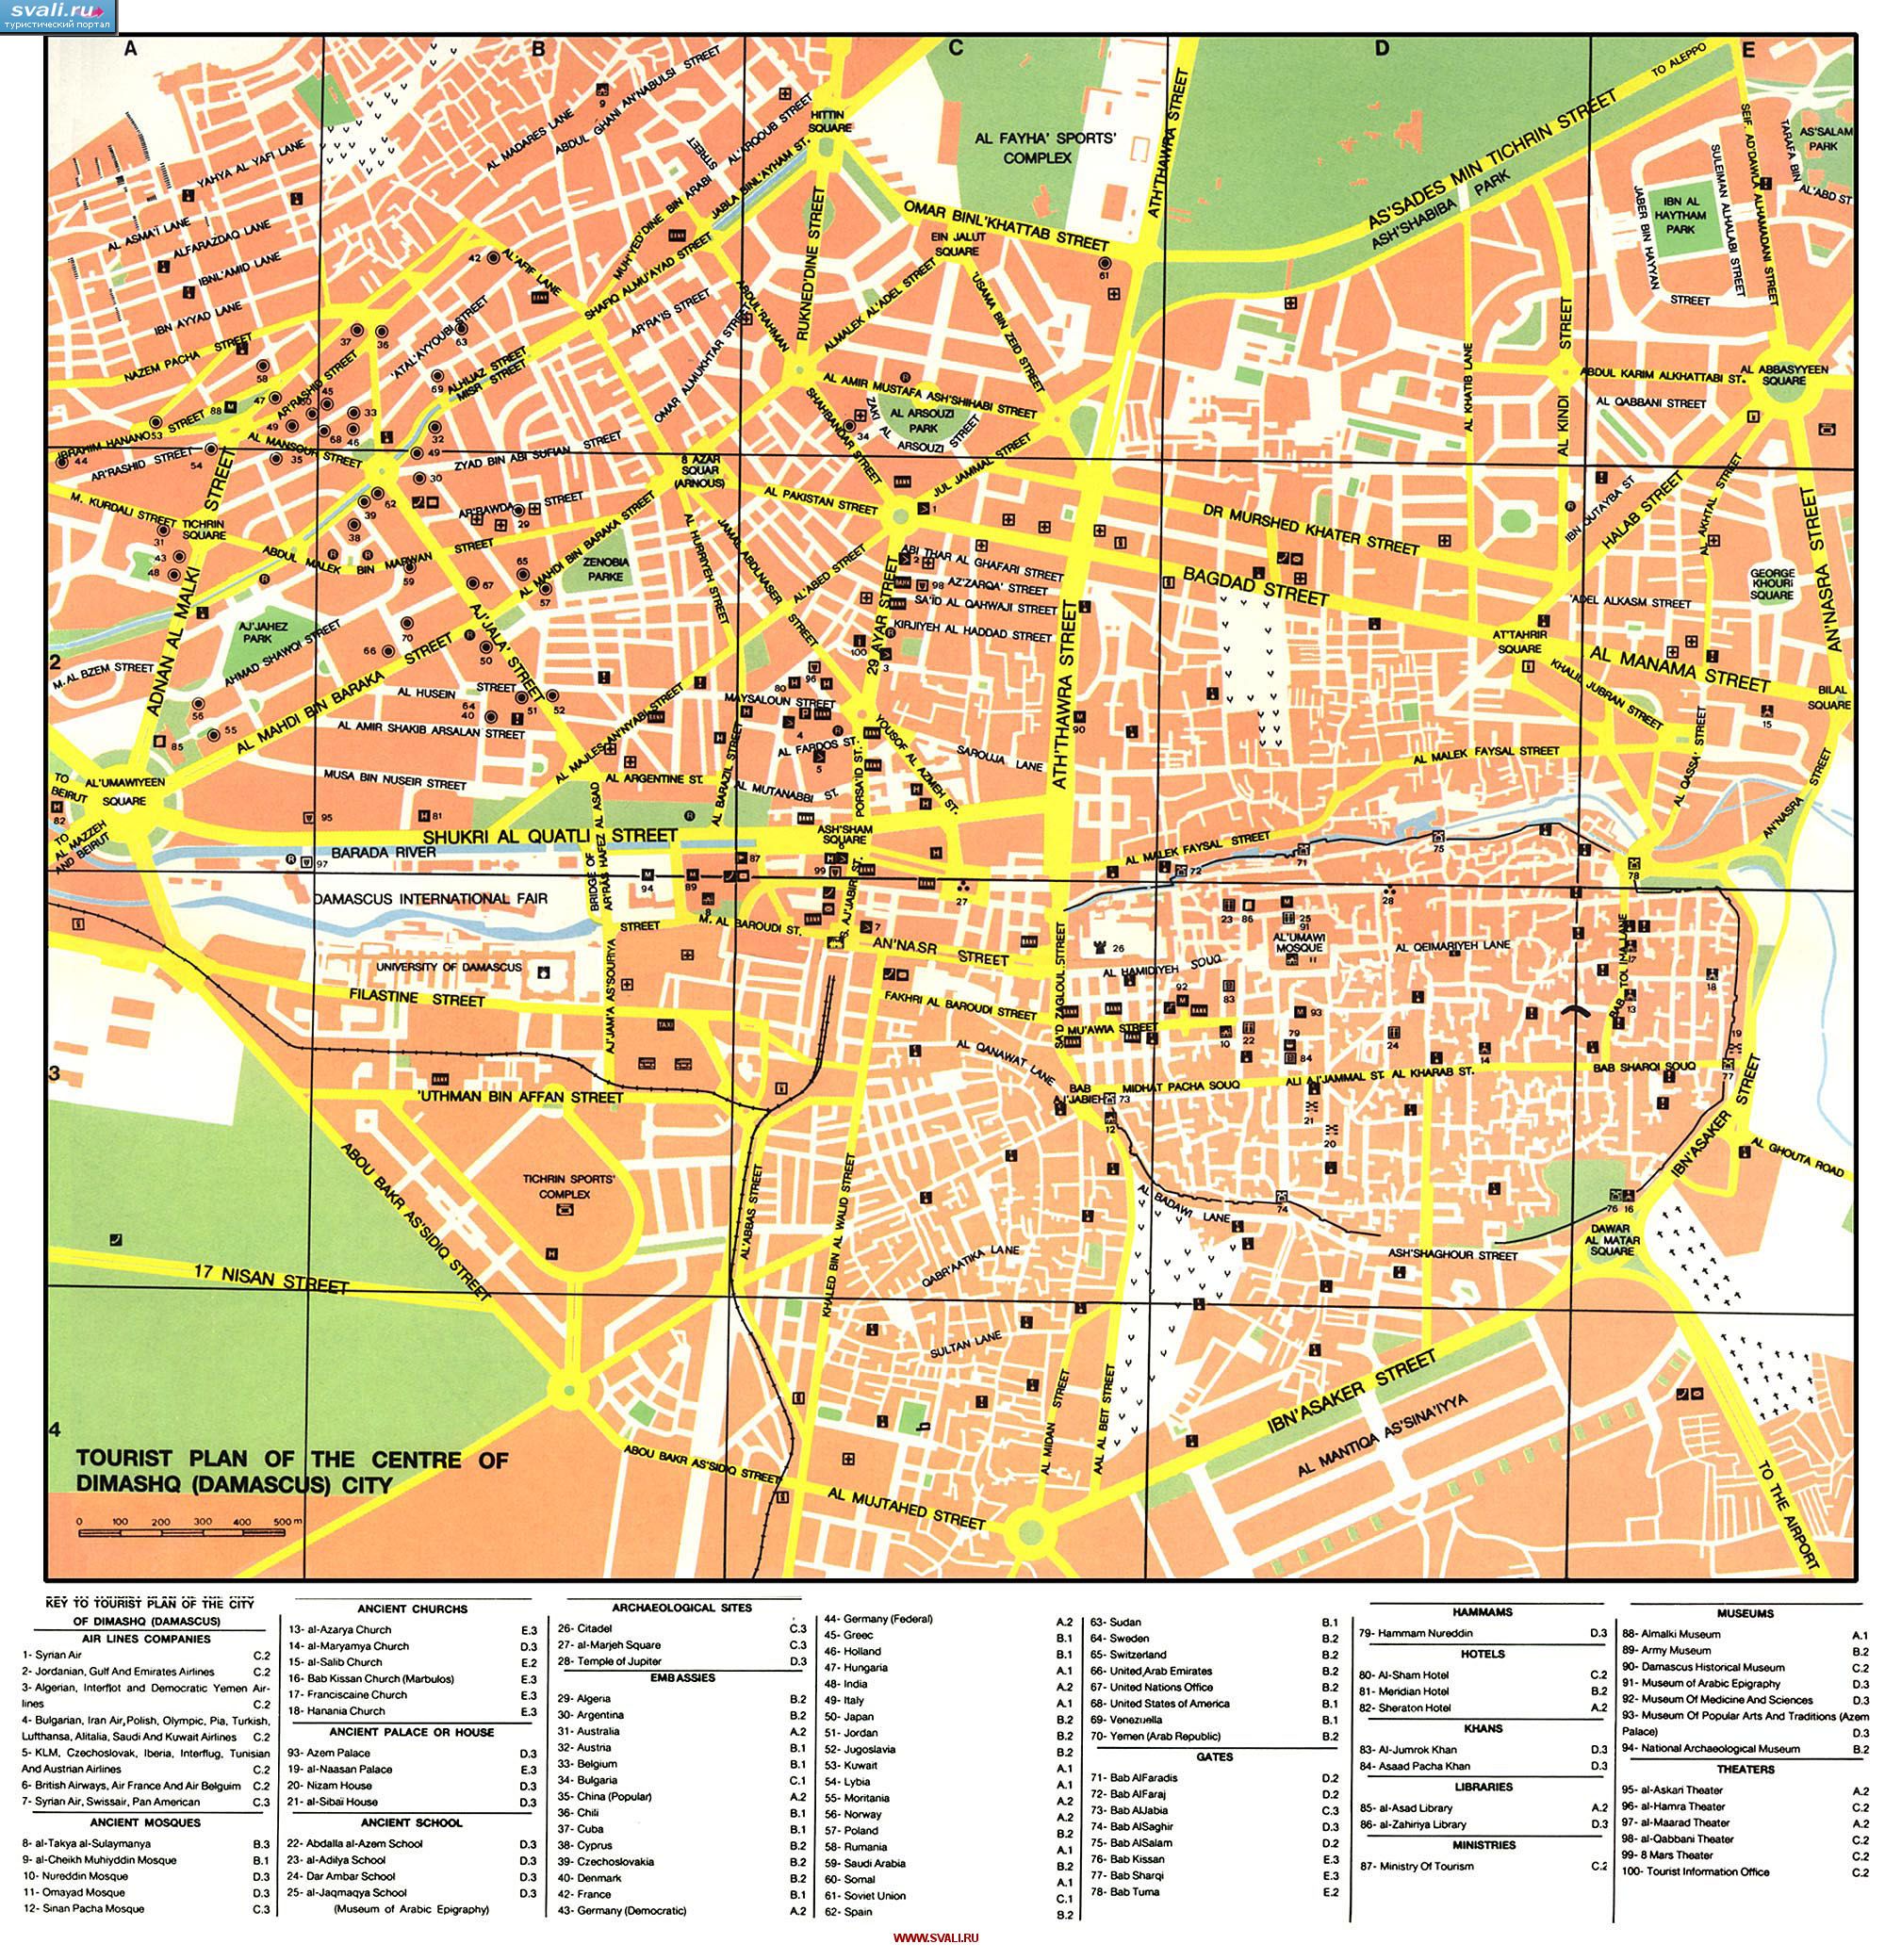 Туристическая карта Дамаска (Damascus), Сирия (англ.)